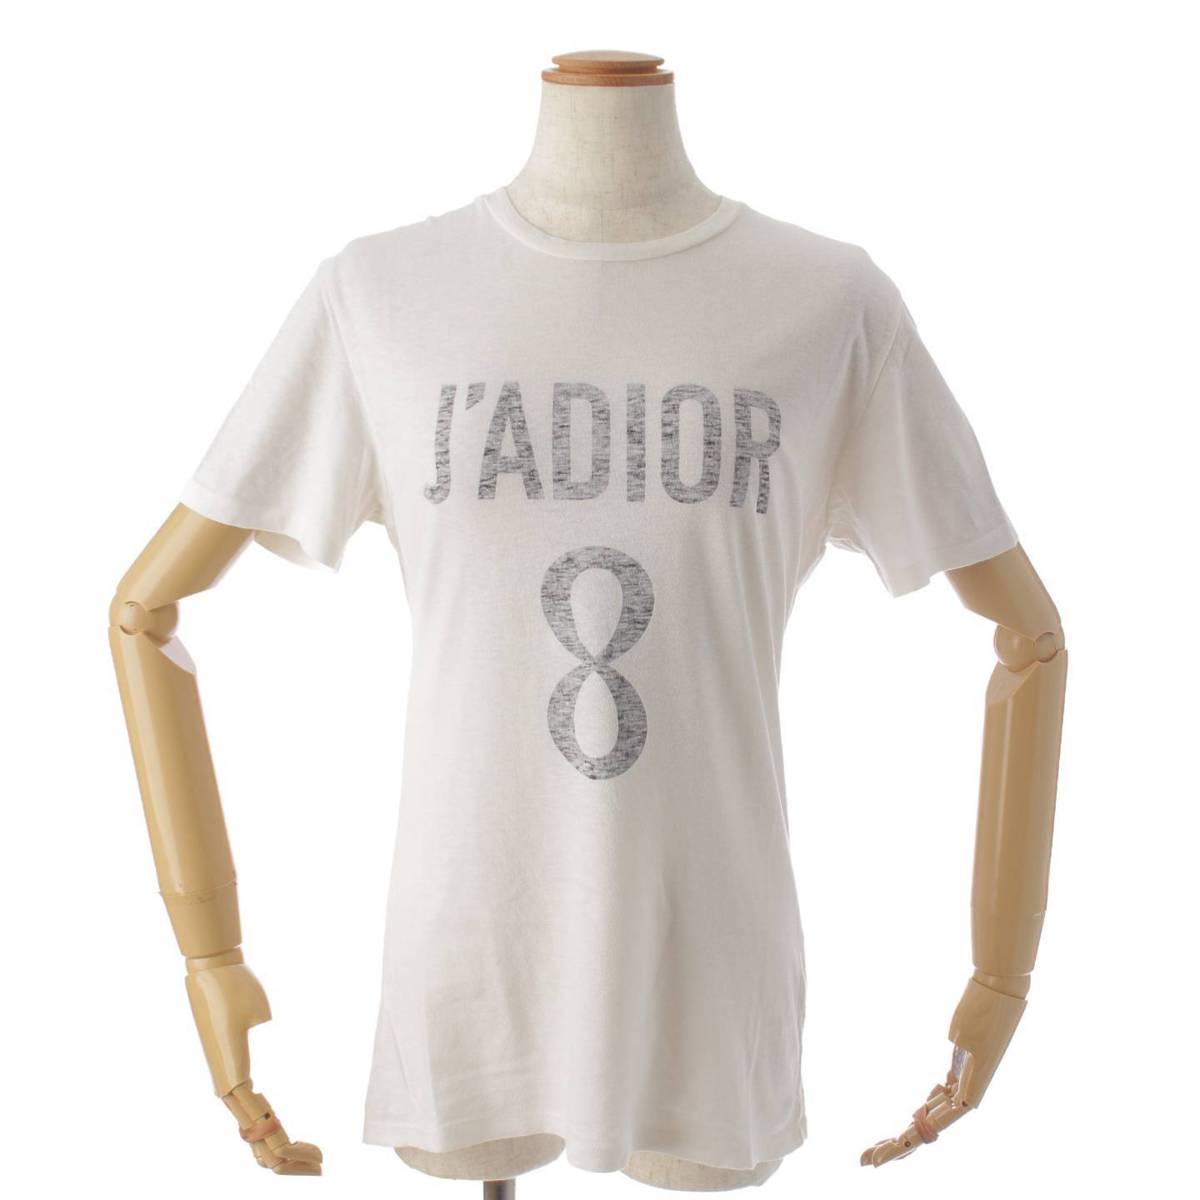 7-8回は着たと思いますDior jadior love Tシャツ XS